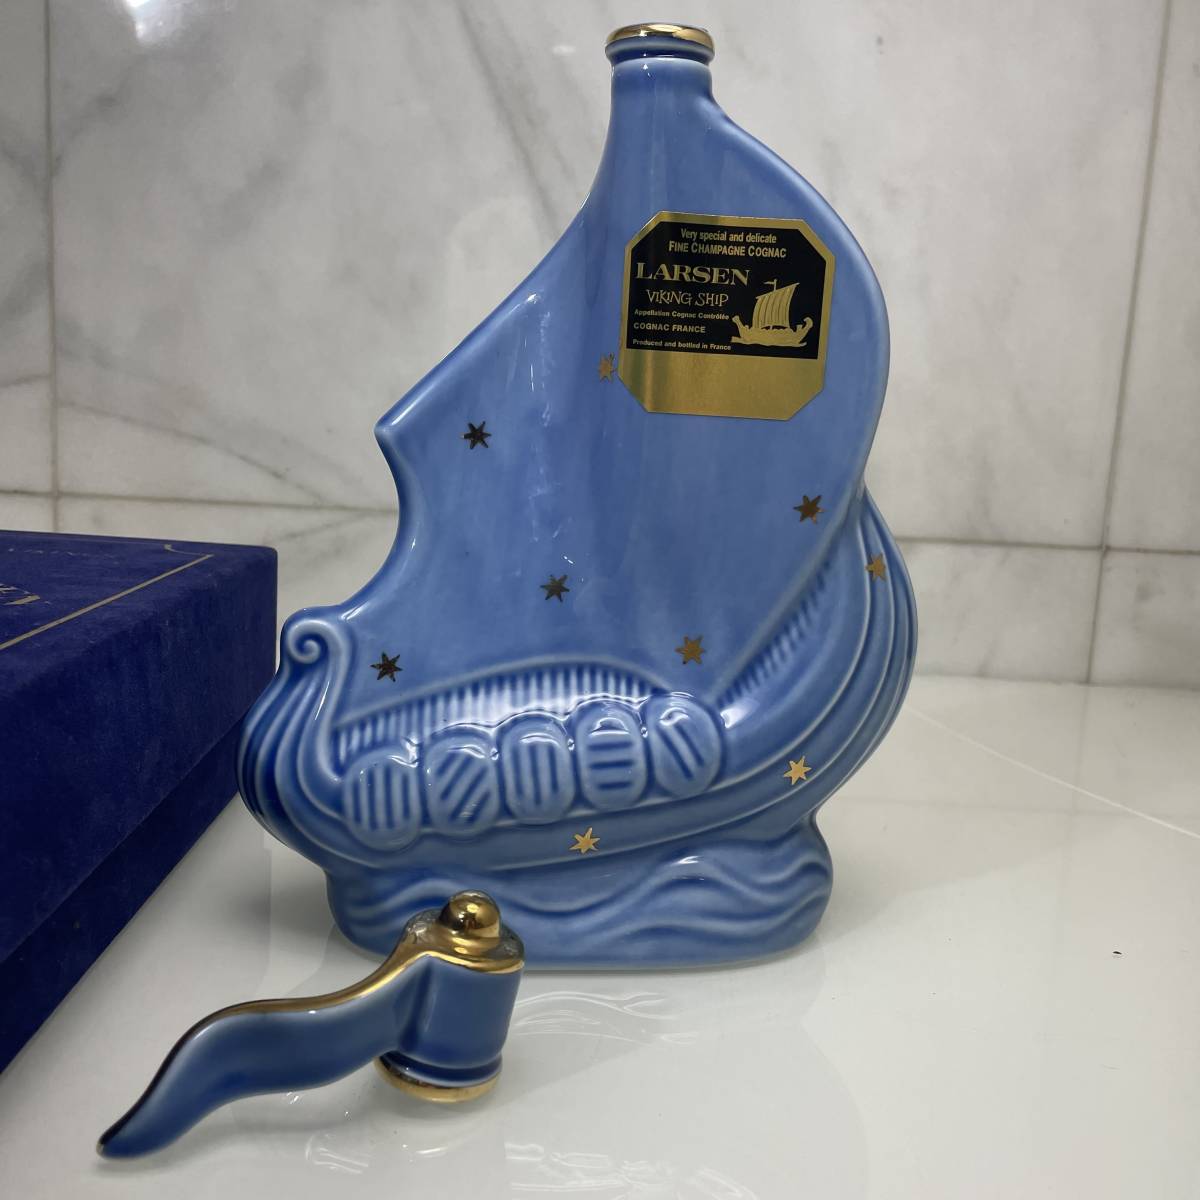 ∞M∞【空き瓶】LARSEN ラーセン バイキングシップ 青陶器ボトル ライトブルー ブランデー コニャック ∞T-2306033